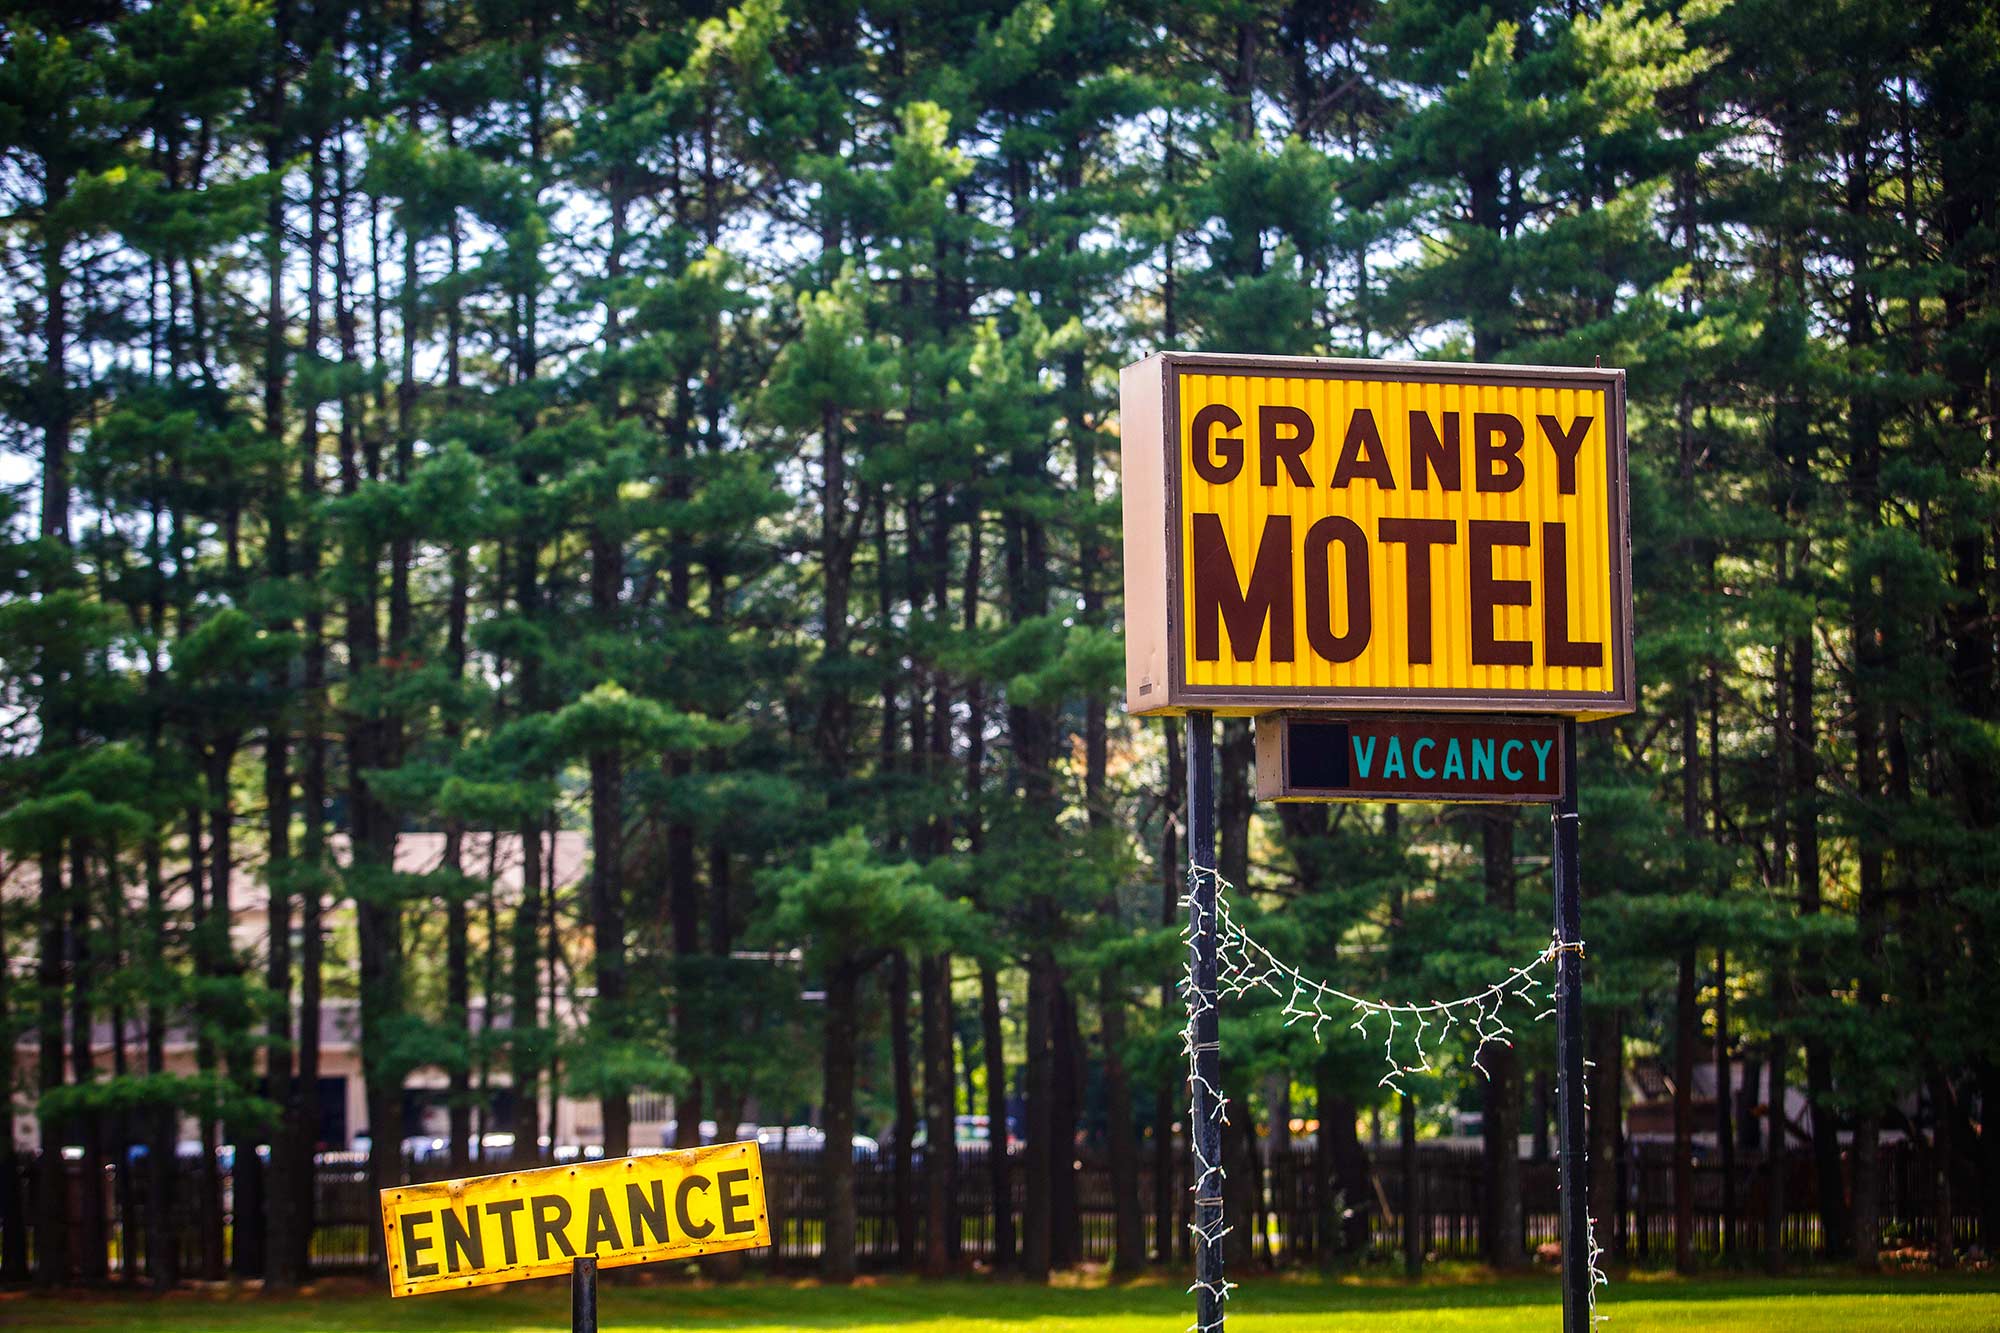 Granby Motel, Granby, CT - 7/27/15